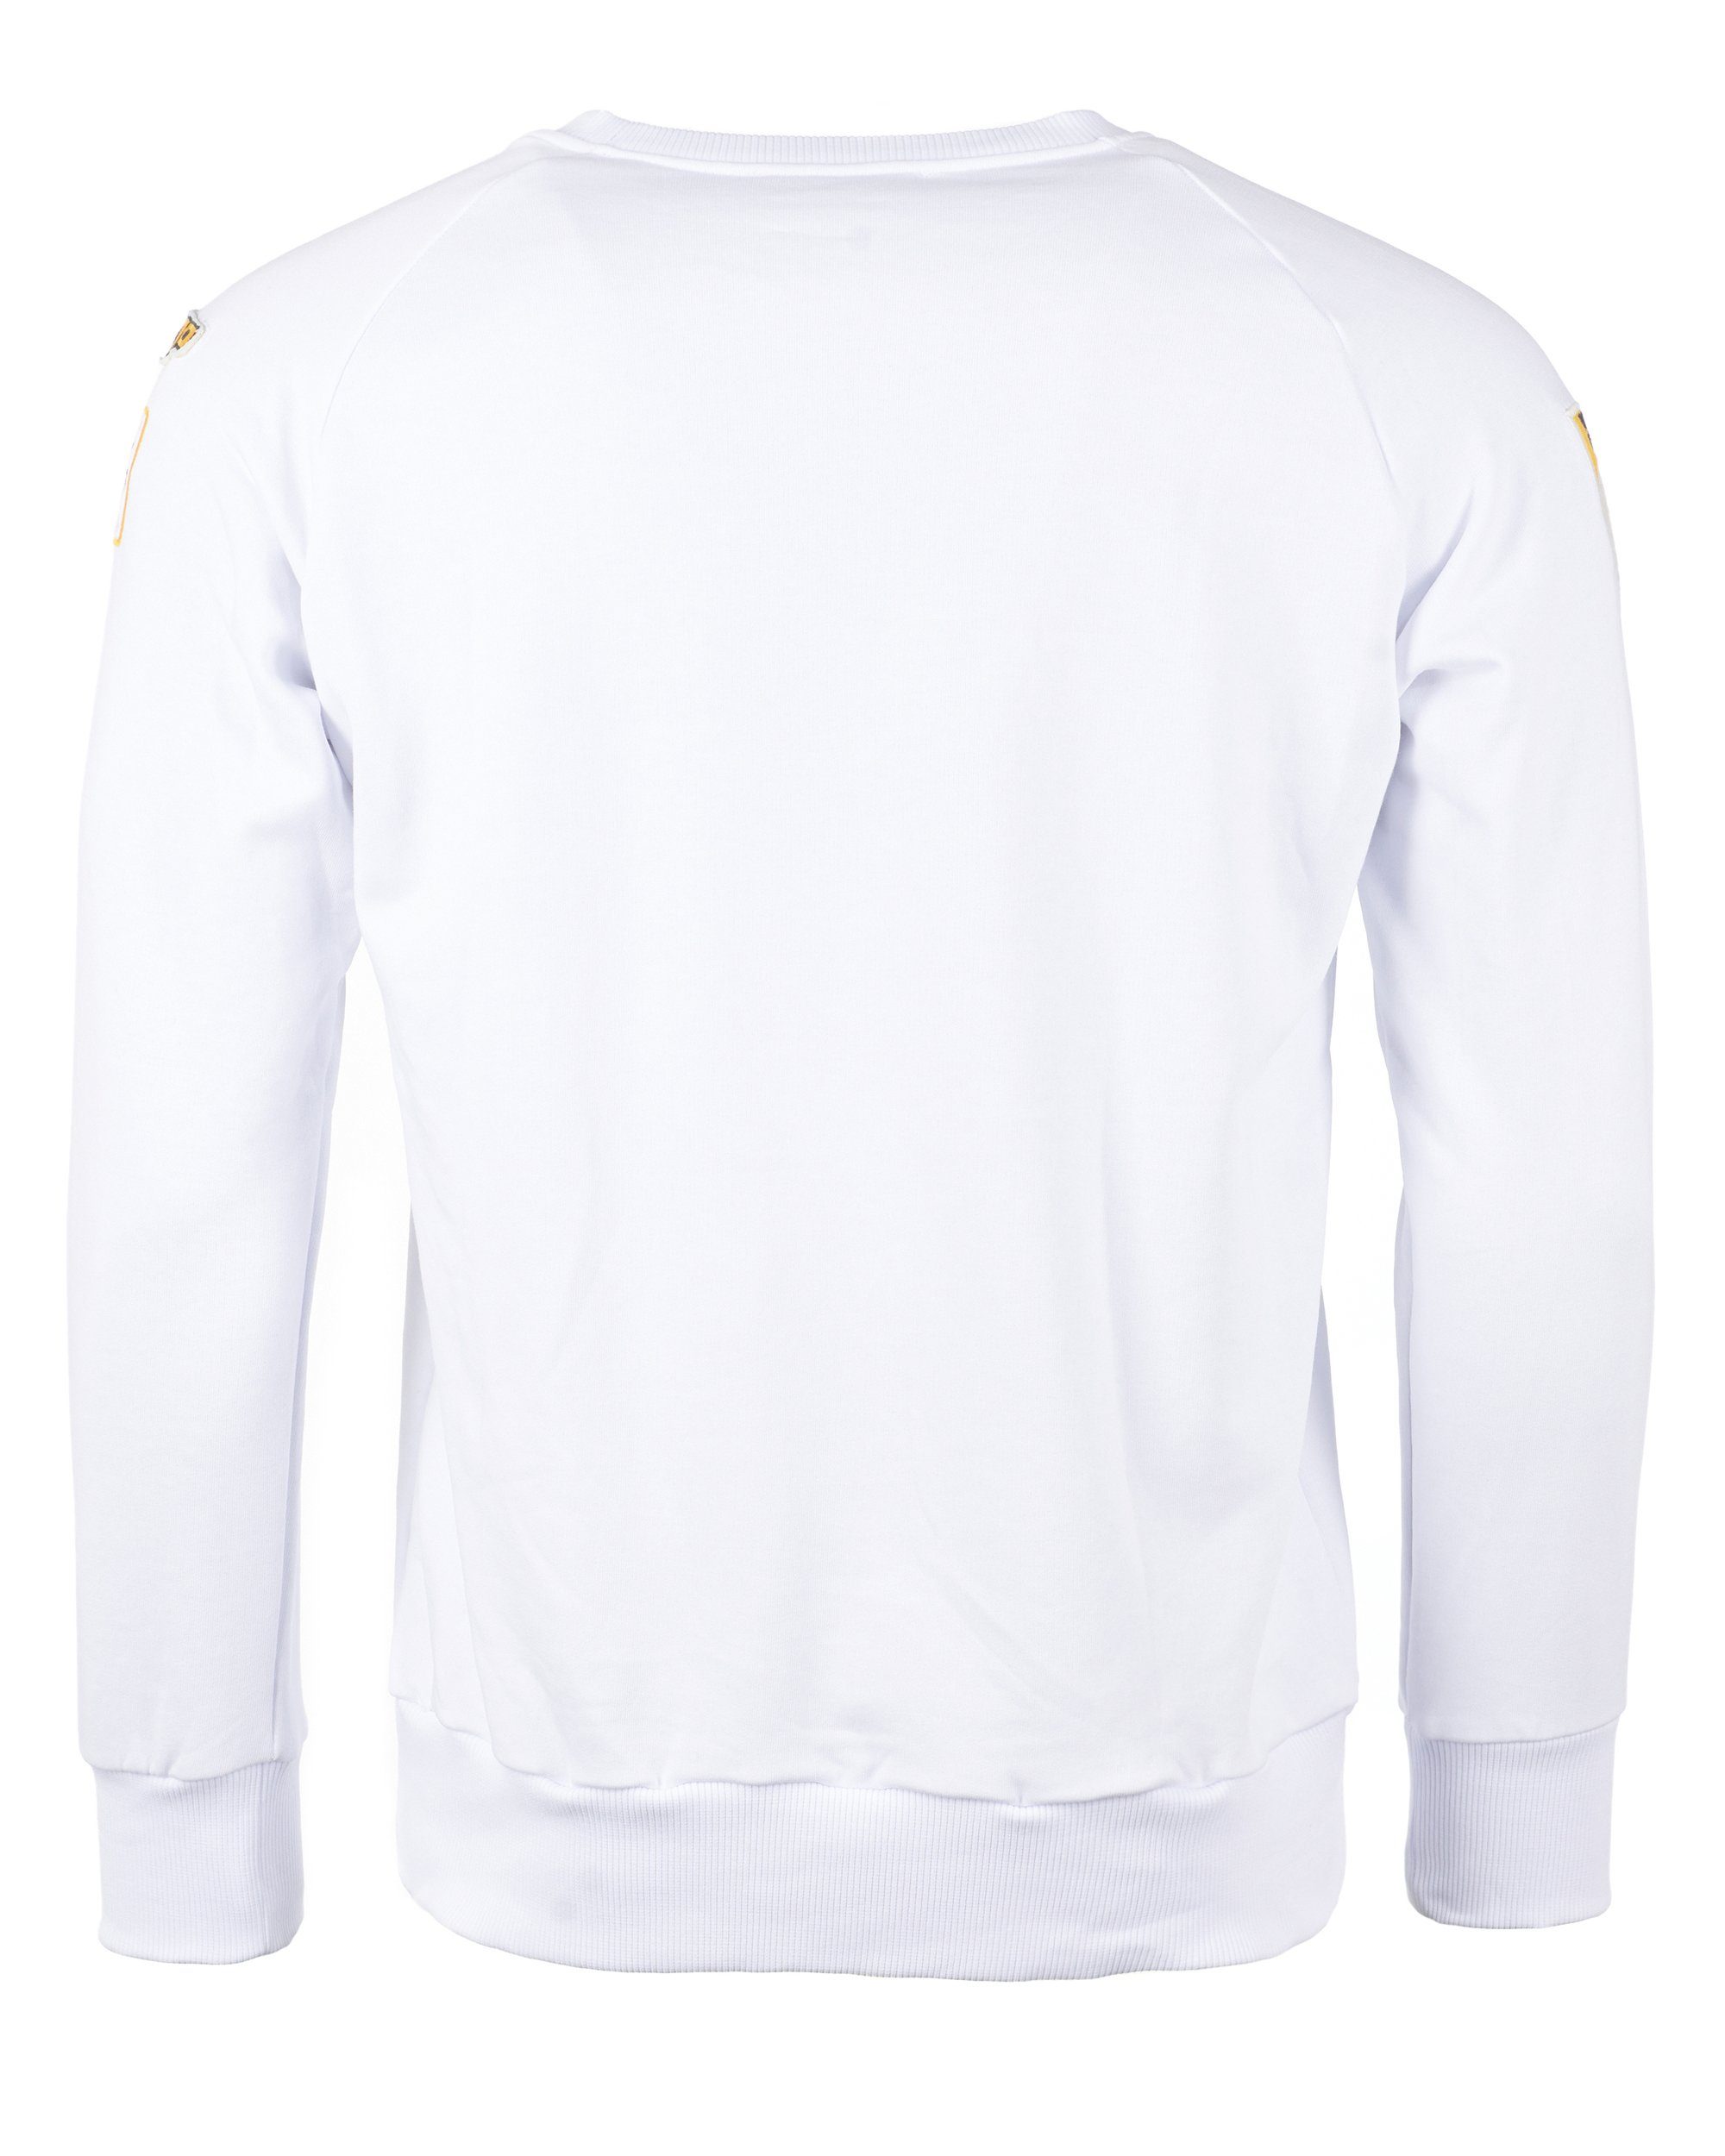 TOP Dell GUN white Sweater TG20193011